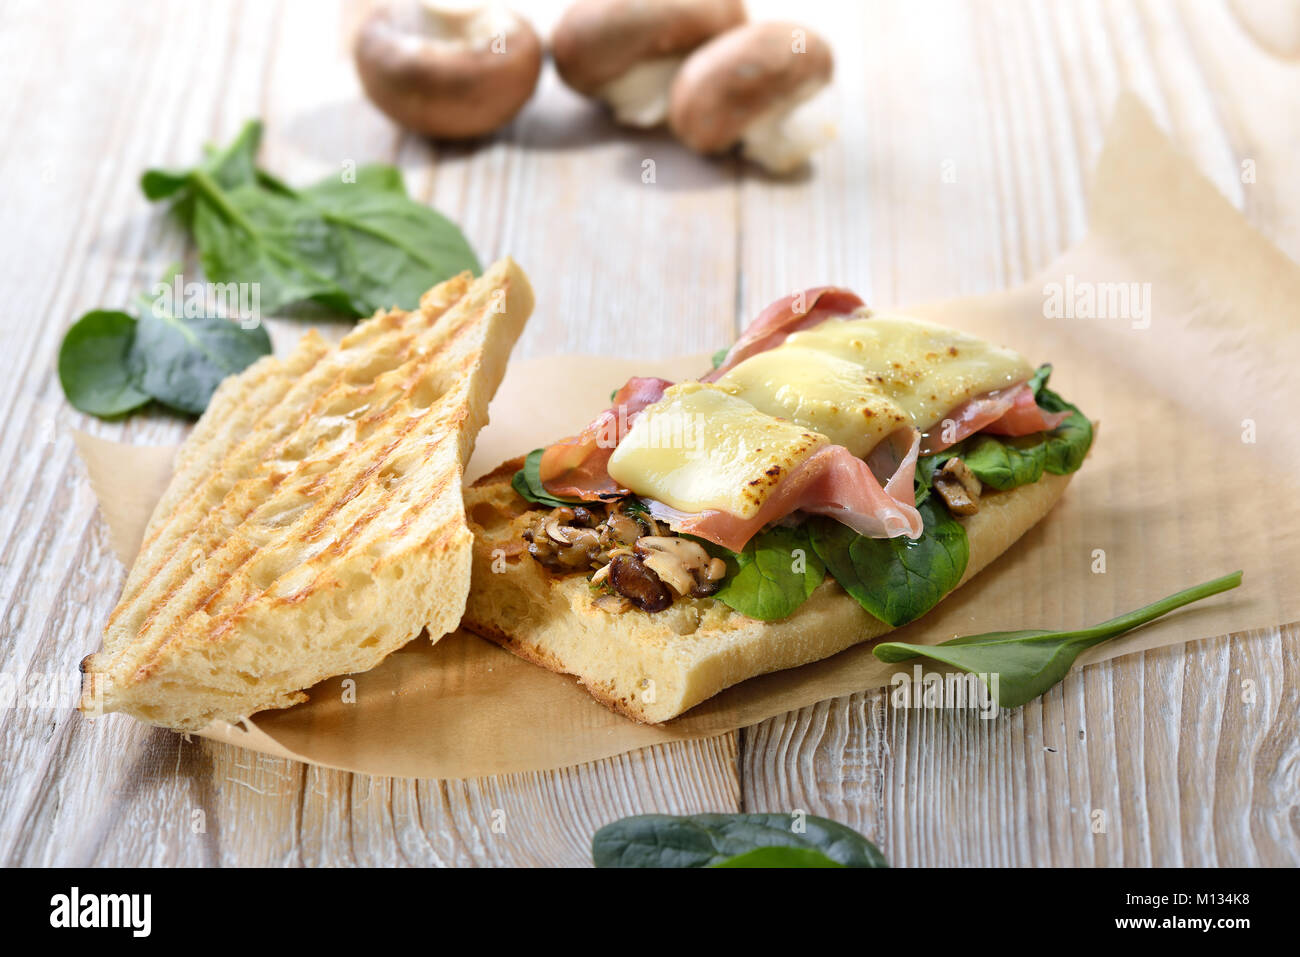 Cucina di strada: panini caldi con lo spagnolo prosciutto Serrano e giovani foglie di spinaci conditi con formaggio grattugiato servito su un sfondo di legno Foto Stock